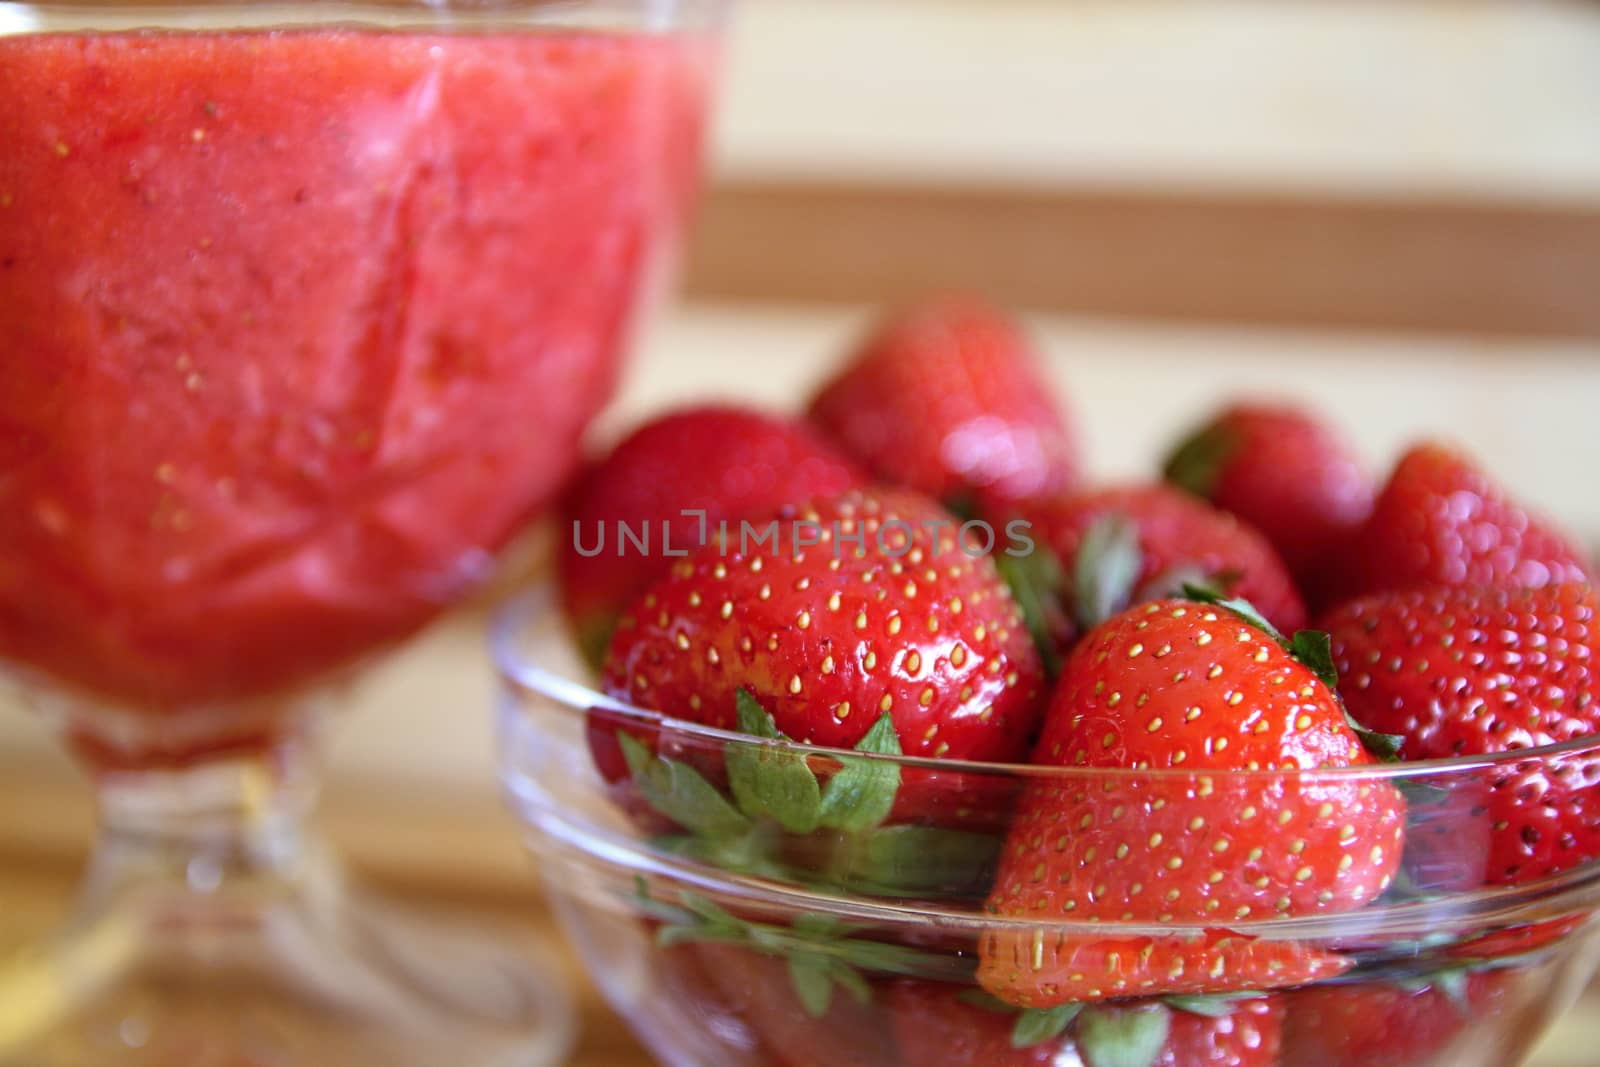 Strawberry dessert by ppawel